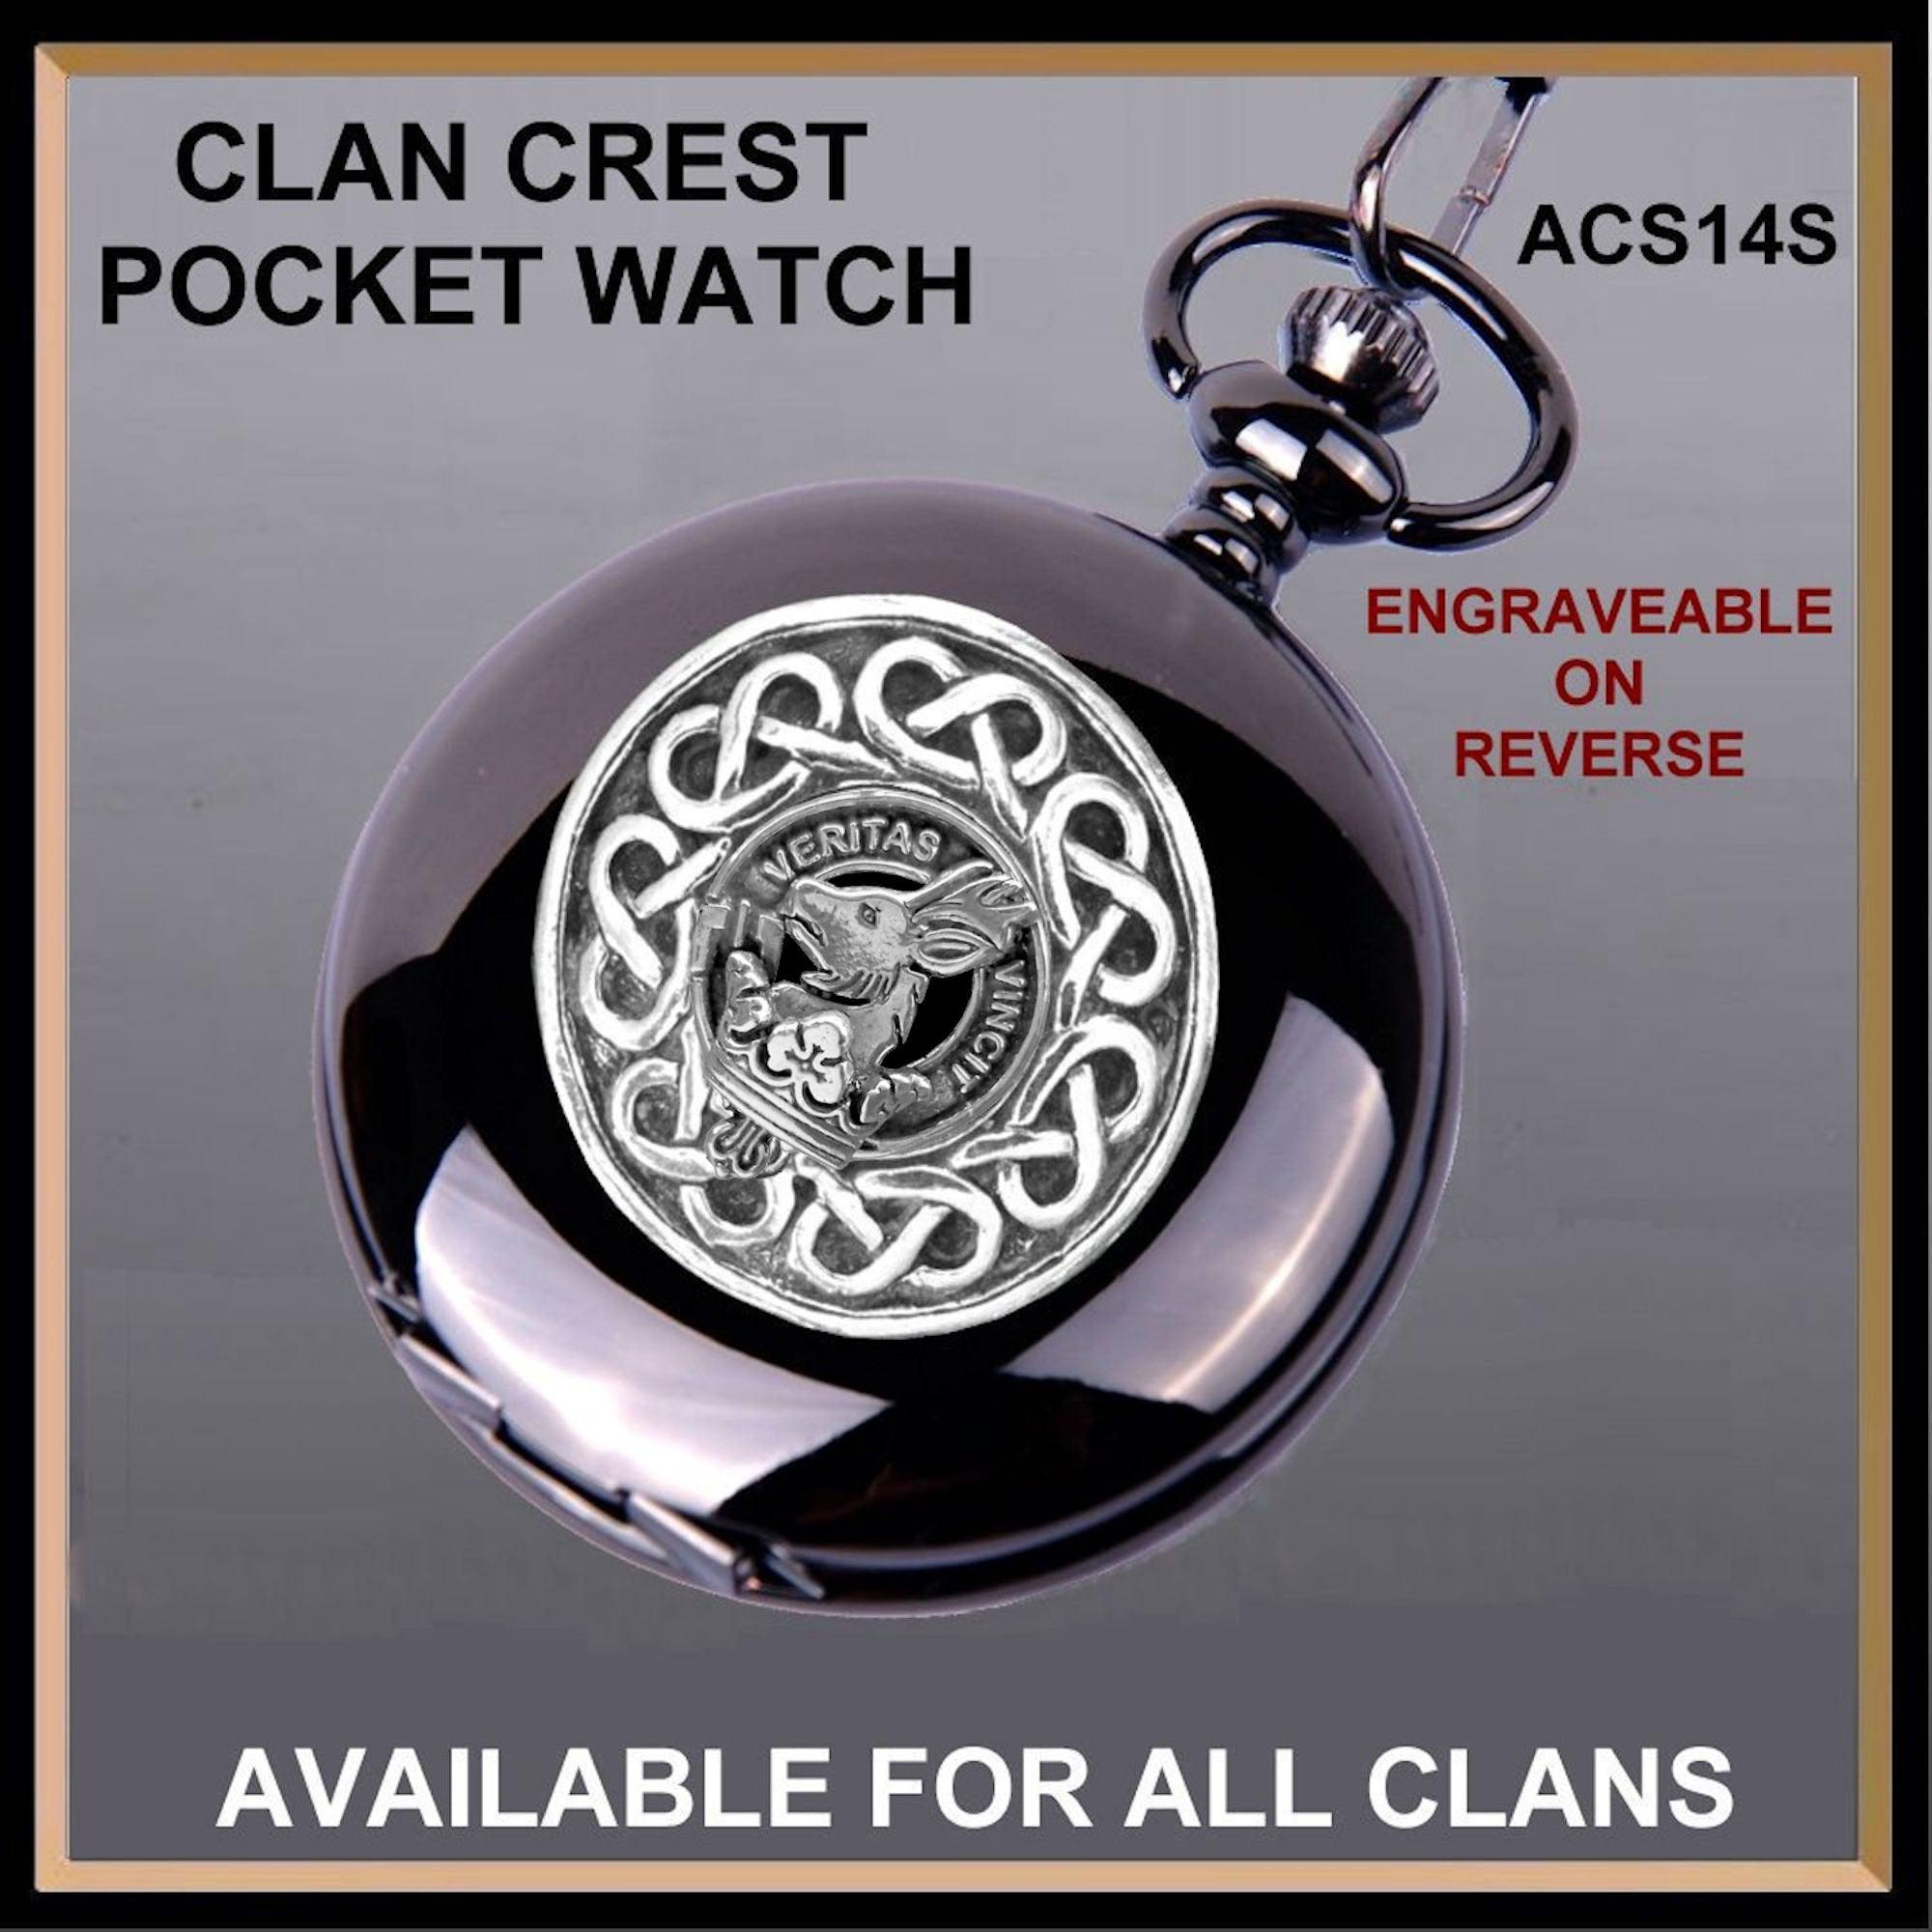 Keith Scottish Clan Crest Pocket Watch